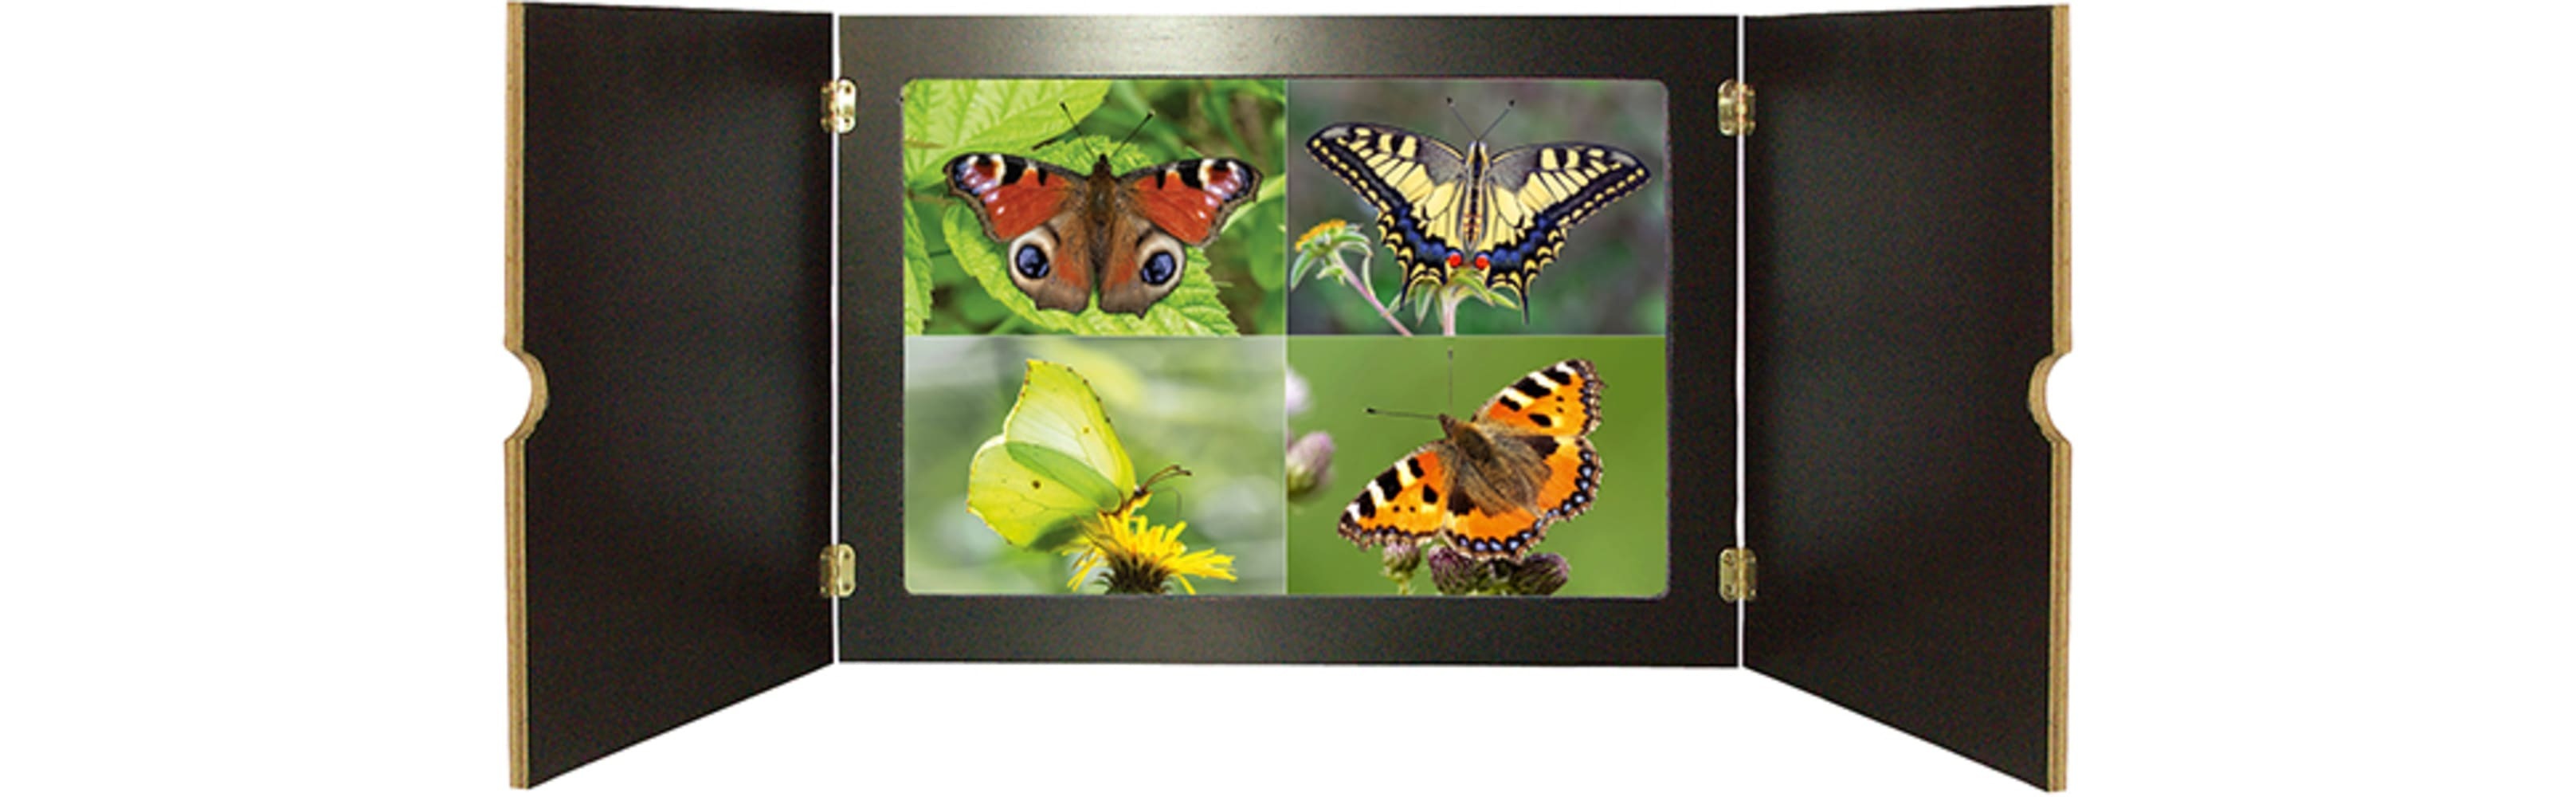 Ameise, Biene und Schmetterling. Unsere Insekten. Kamishibai Bildkarten und Memo-Spiel